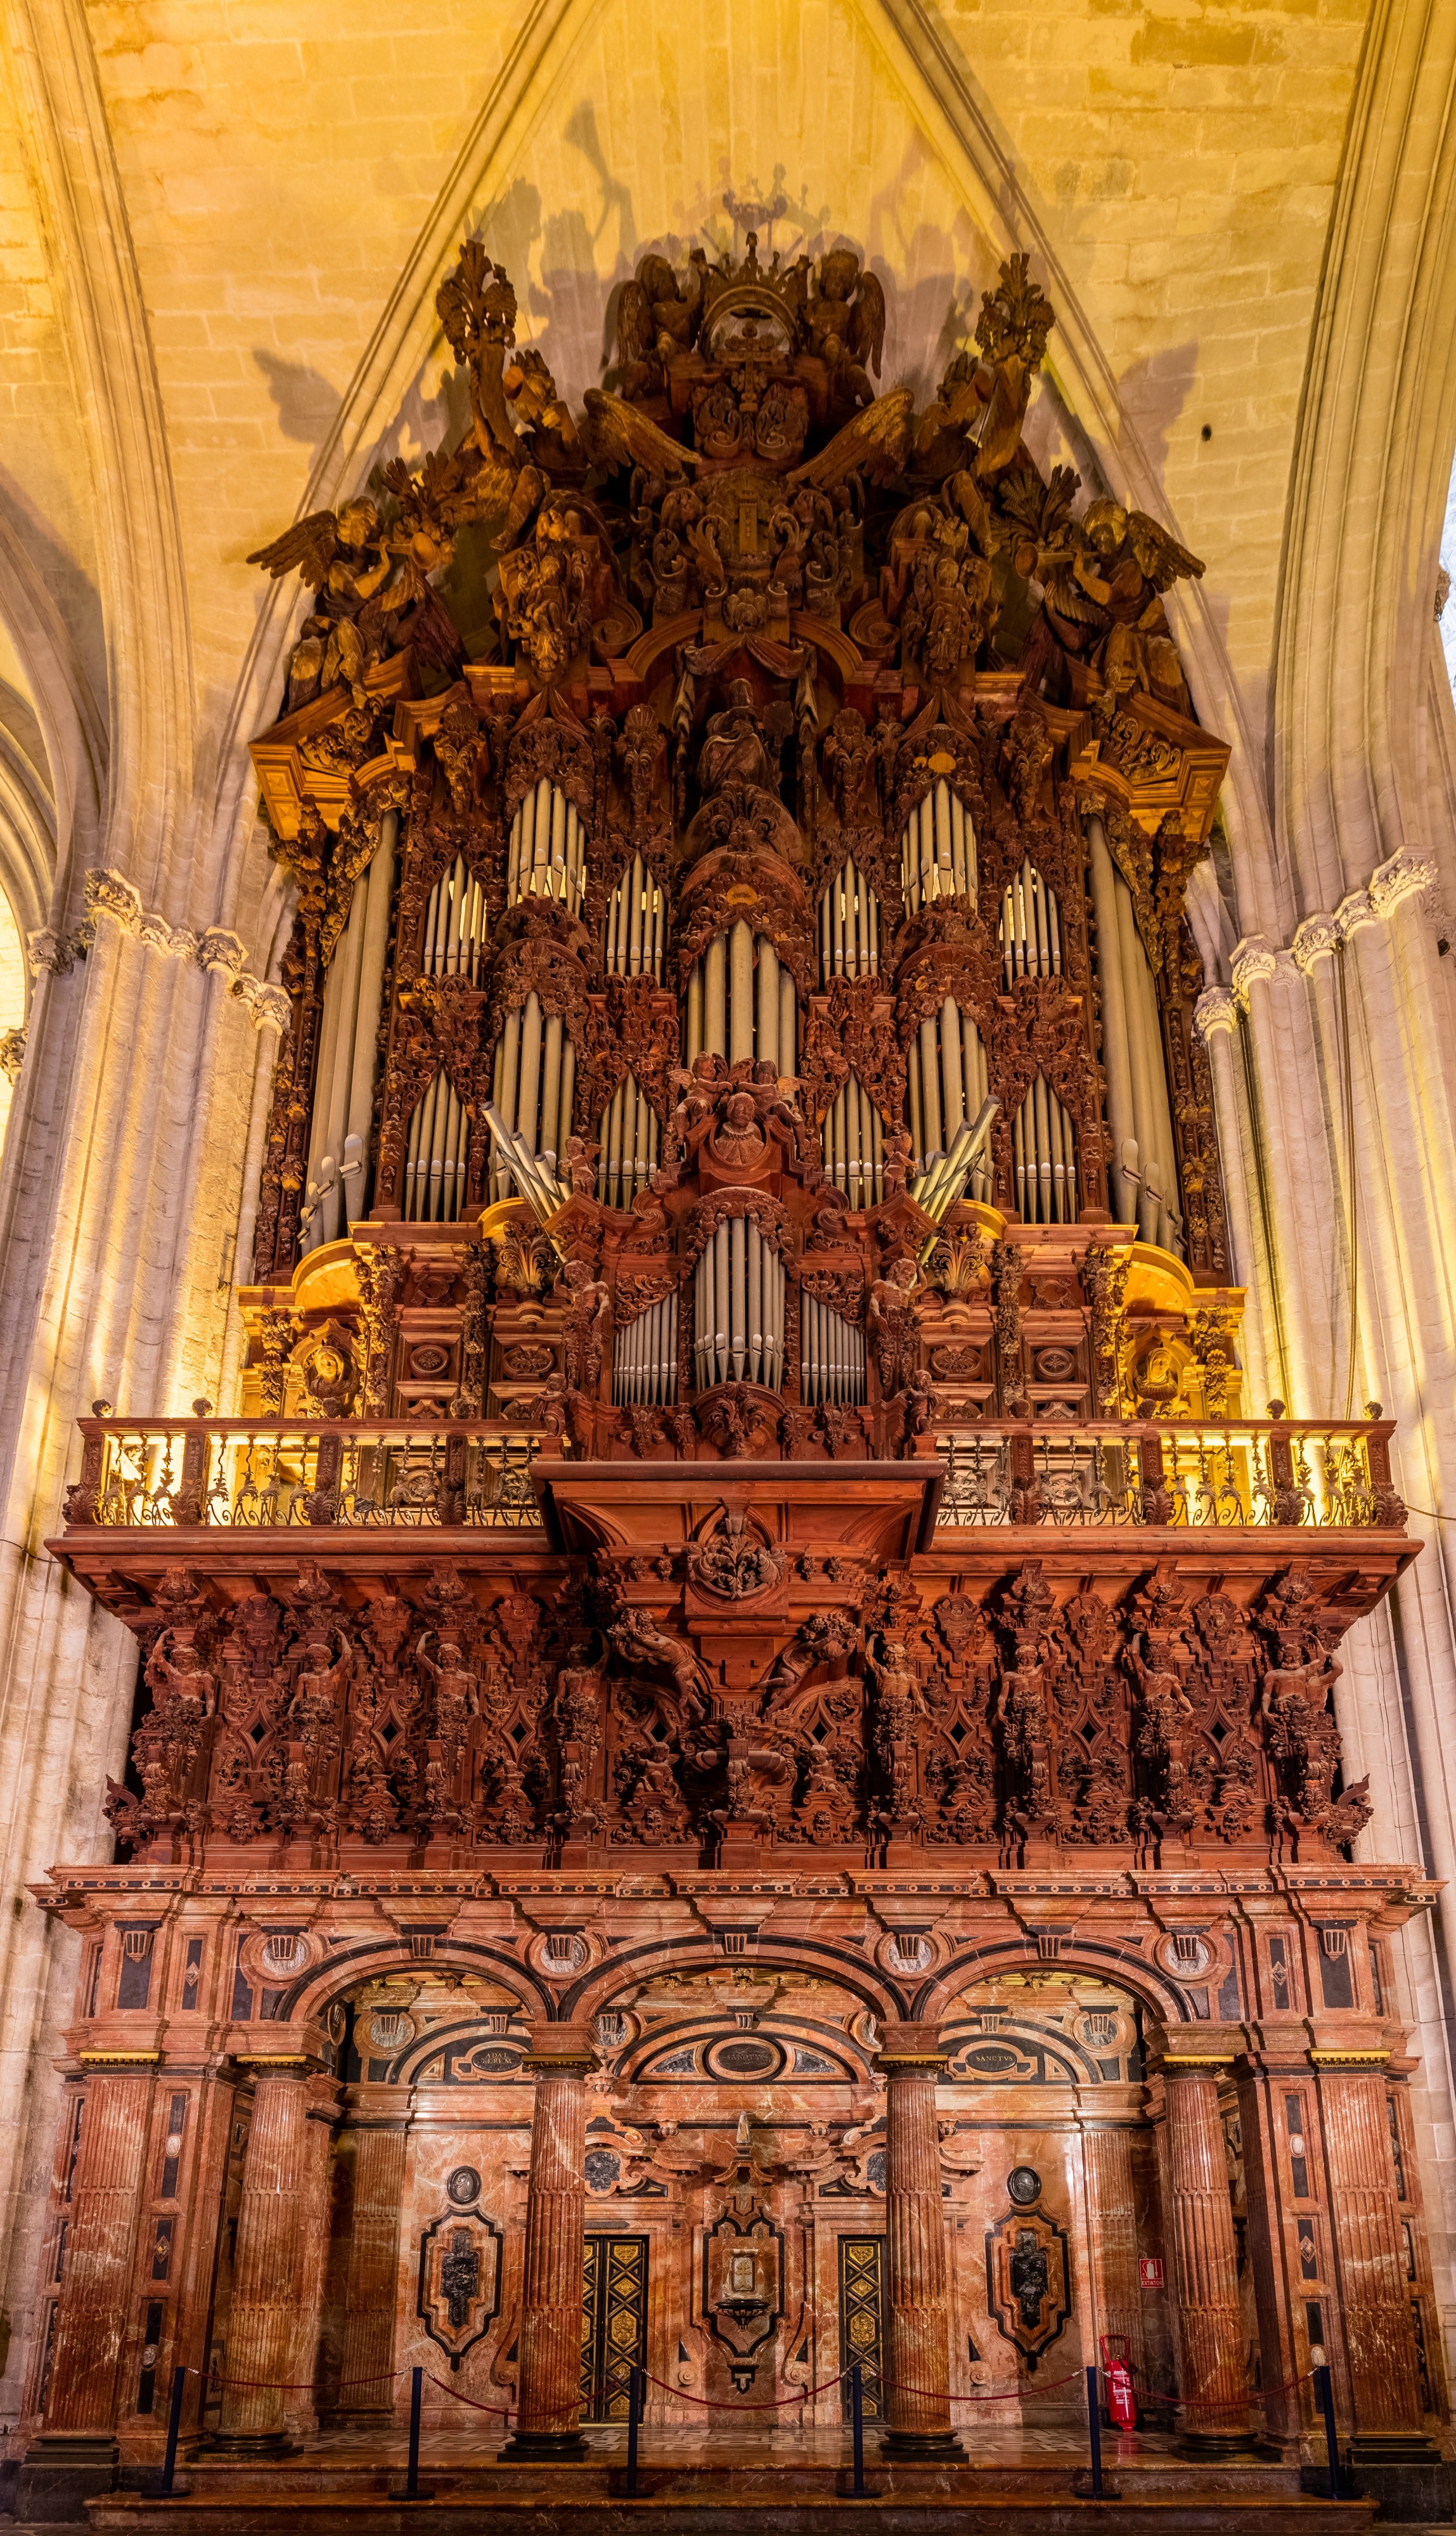 Órgano, Catedral de Sevilla, Sevilla, España, 2015-12-06, DD 97-99 HDR